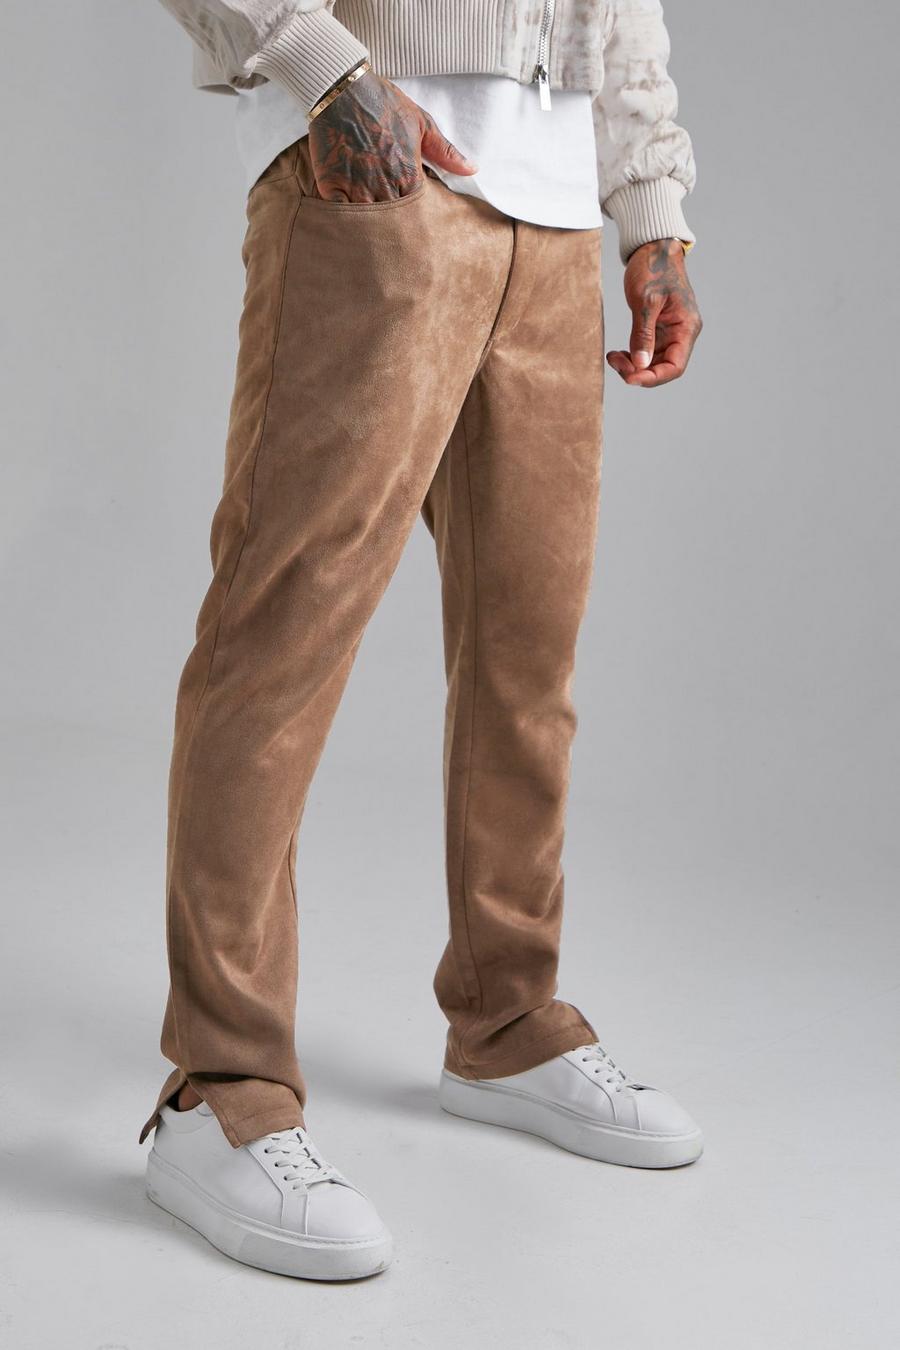 https://media.boohoo.com/i/boohoo/bmm17773_tan_xl/male-tan-fixed-waist-slim-faux-suede-split-hem-trouser/?w=900&qlt=default&fmt.jp2.qlt=70&fmt=auto&sm=fit